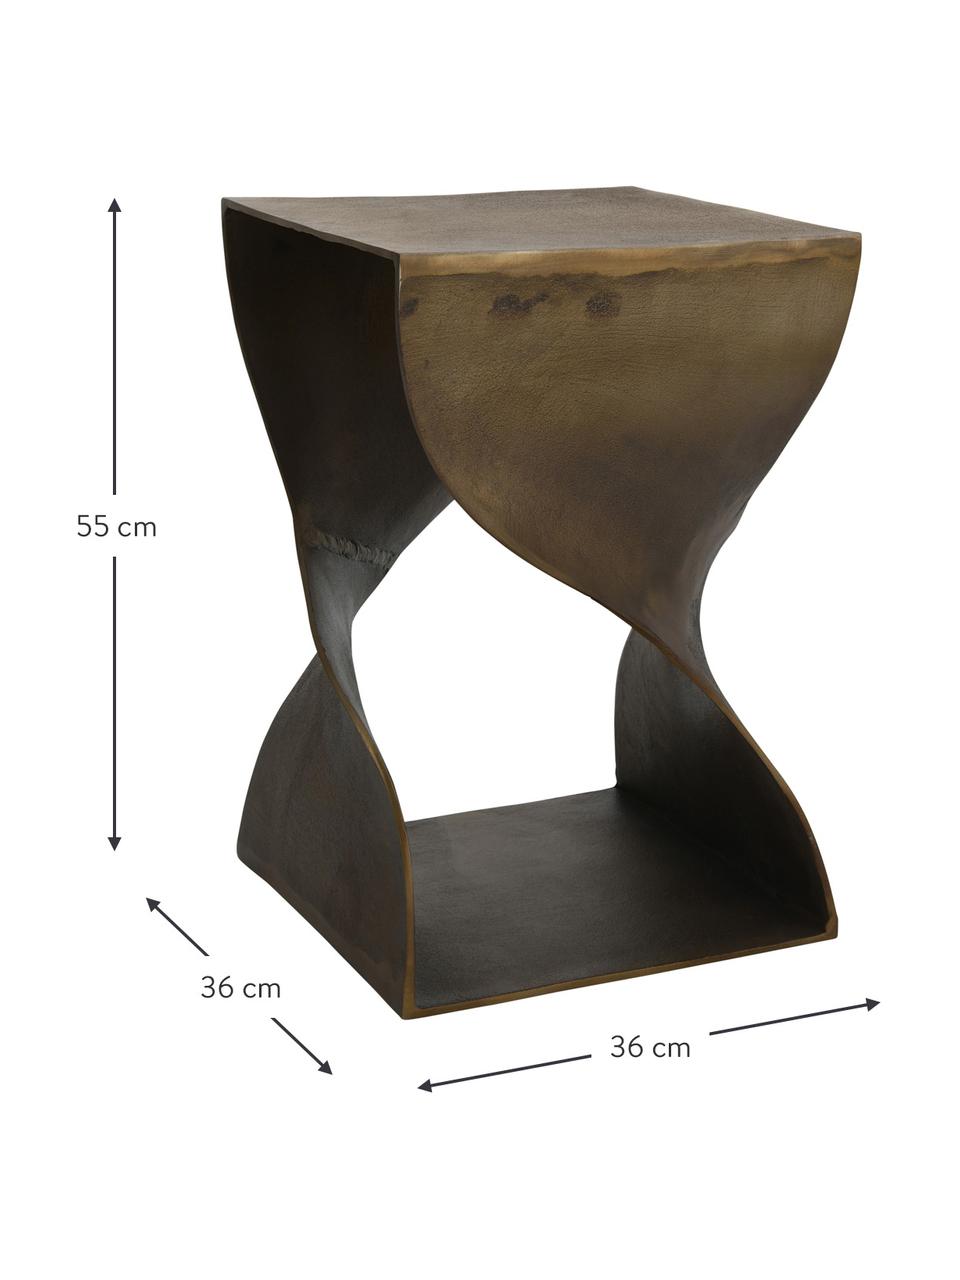 Metall-Beistelltisch Twist in Bronzefarben, Metall, beschichtet, Bronzefarben, B 36 x H 55 cm